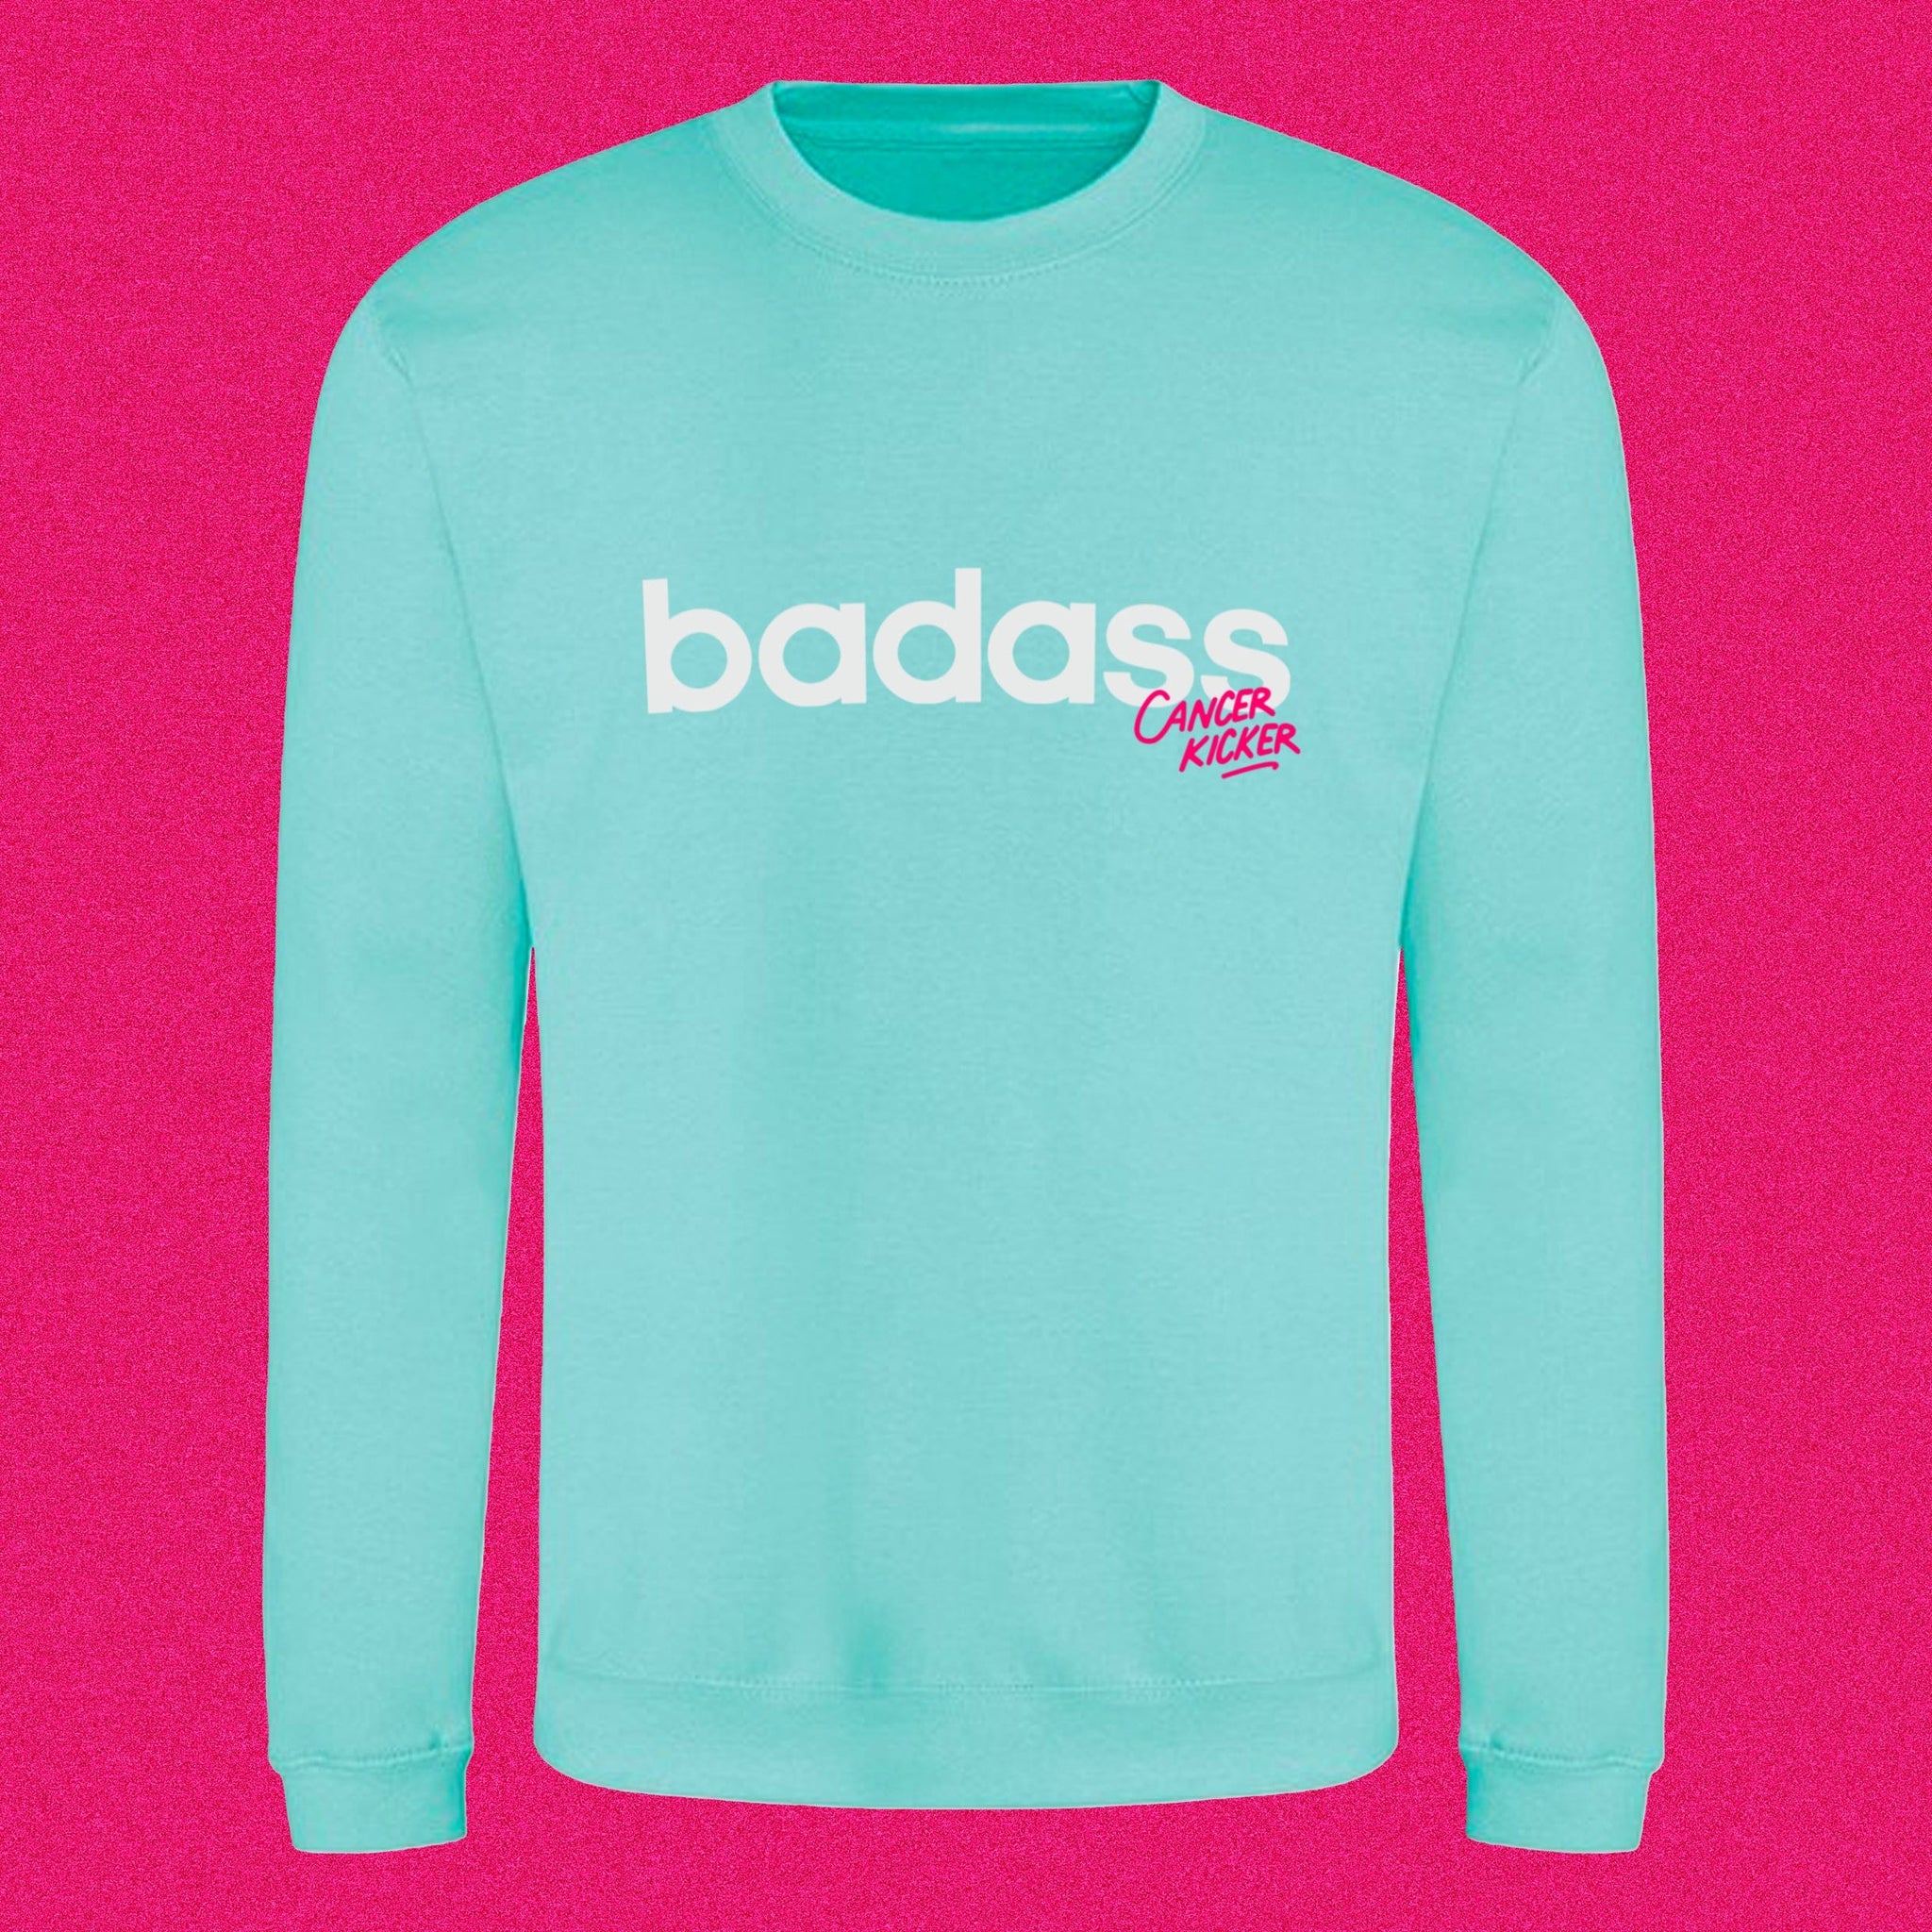 Badass (Cancer Kicker) sweatshirt